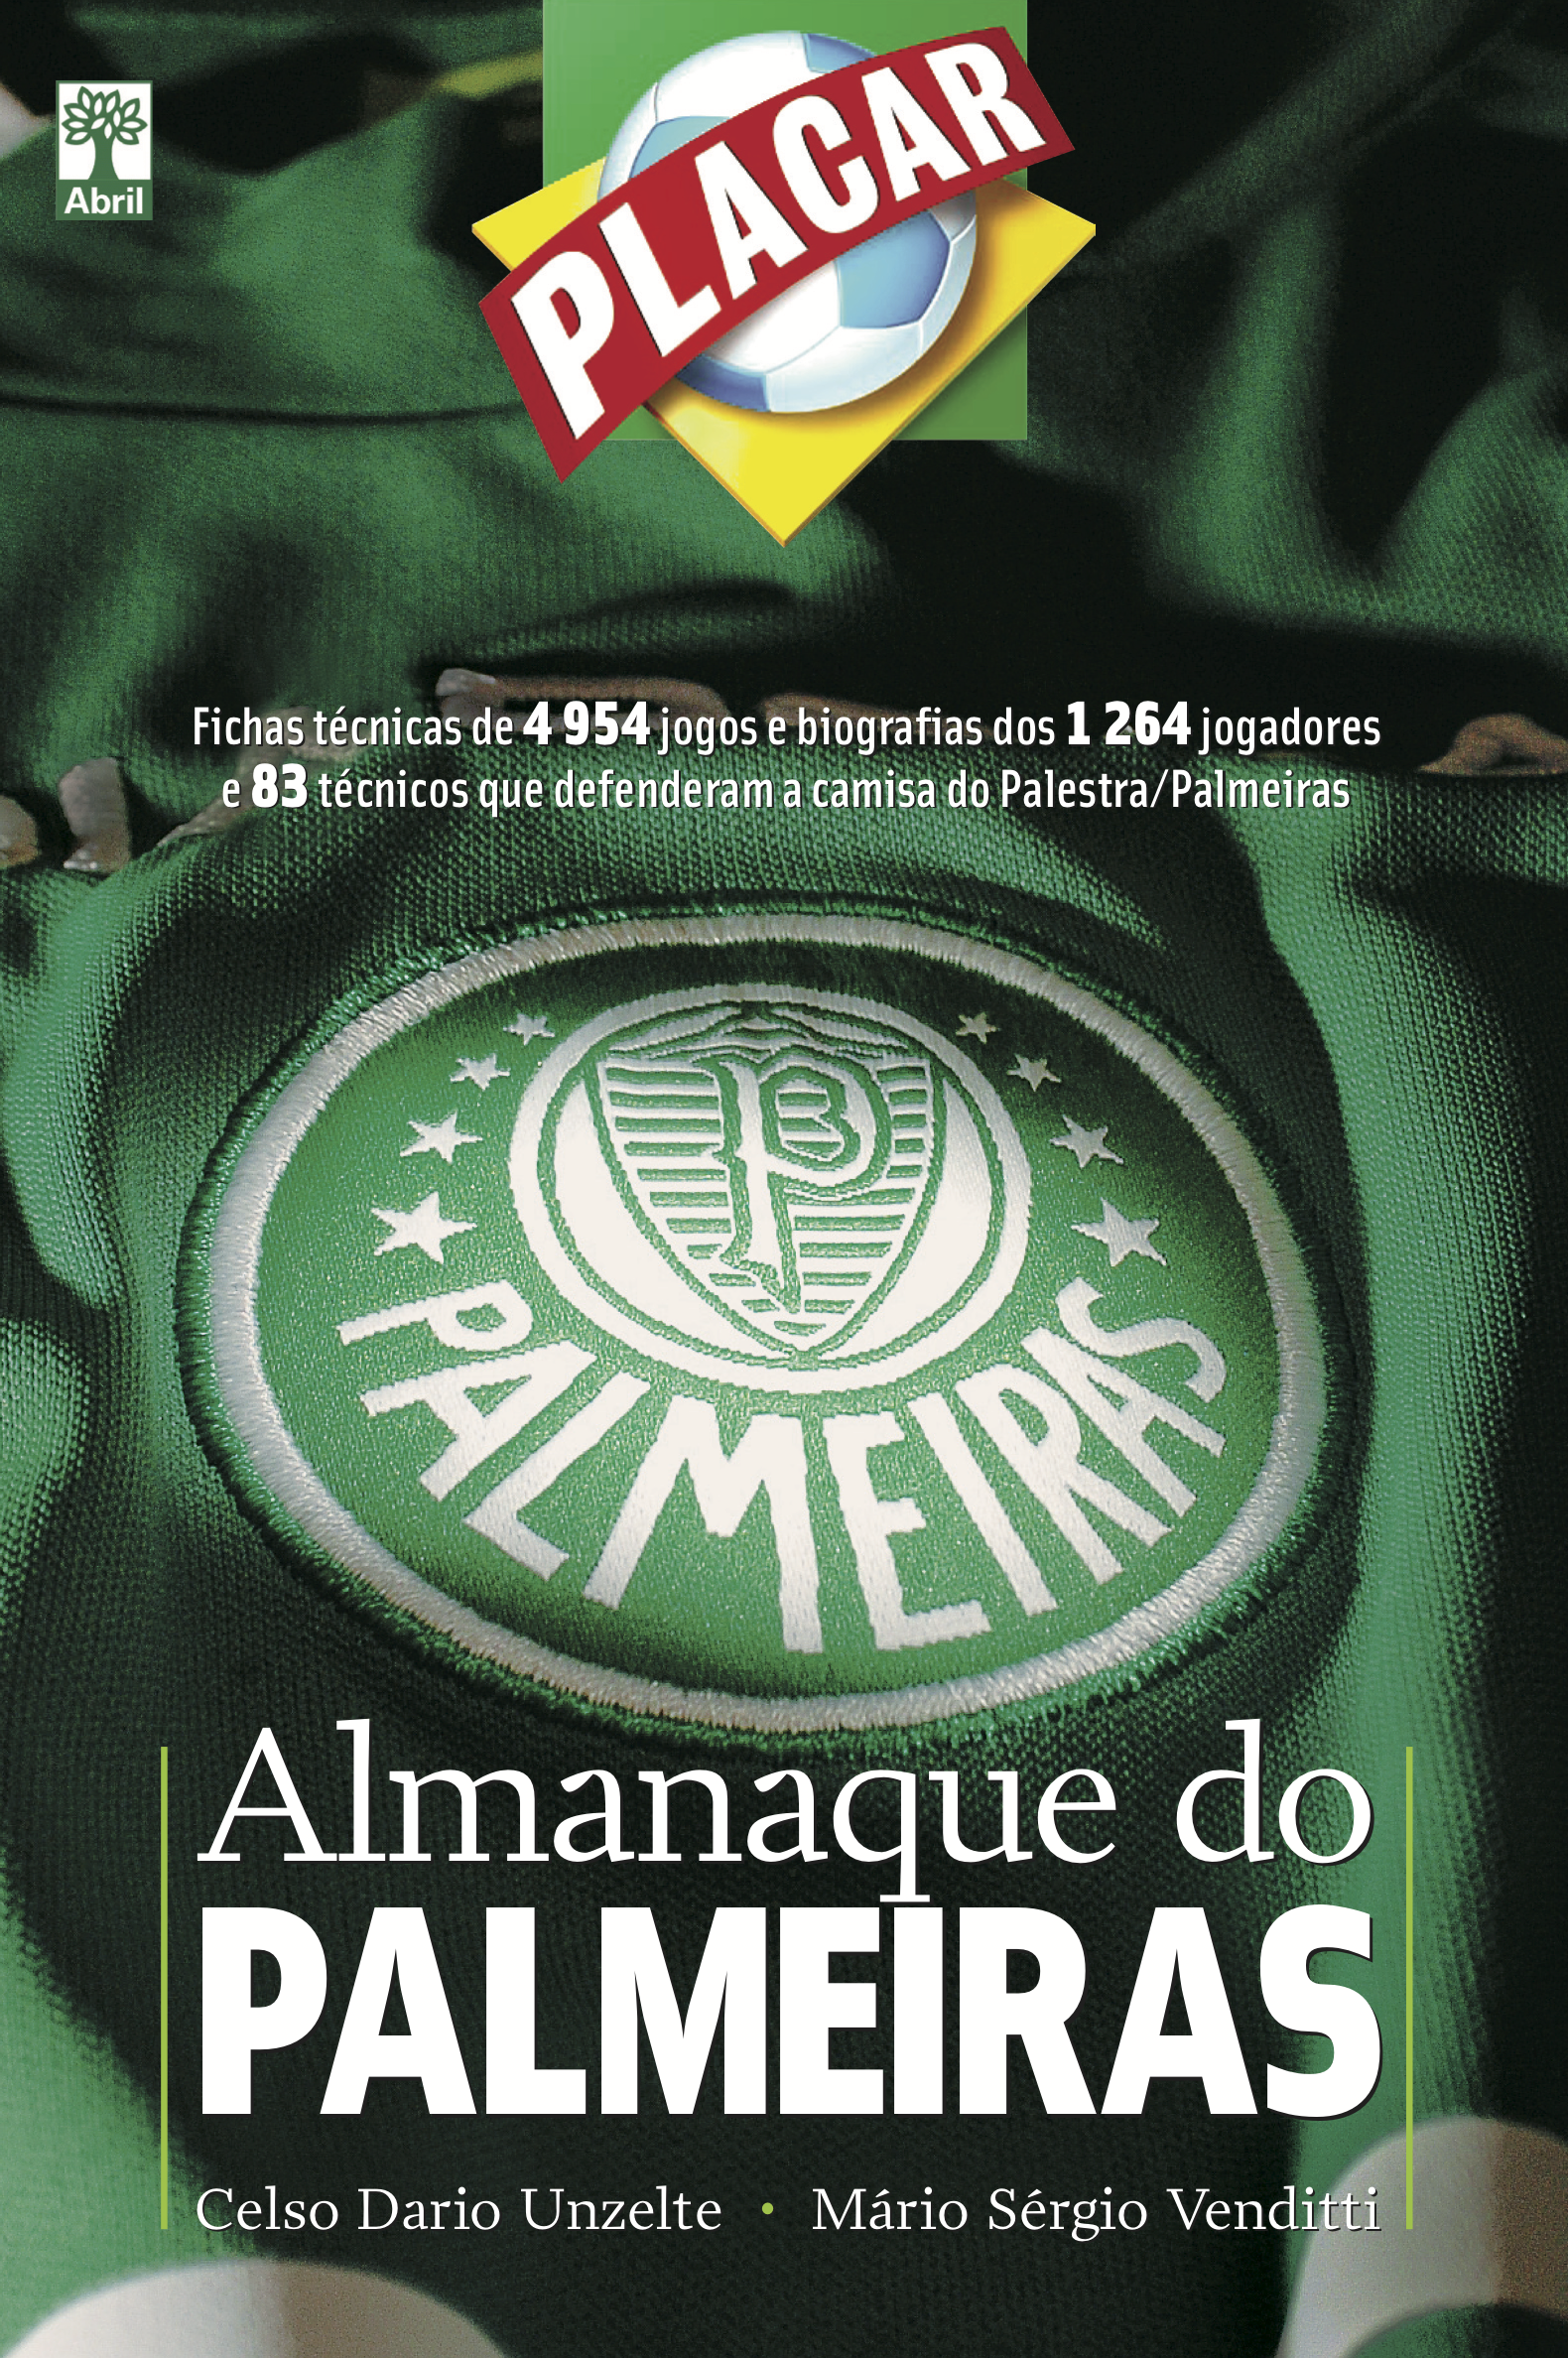 Almanaque do Palmeiras está de volta; confira como comprar